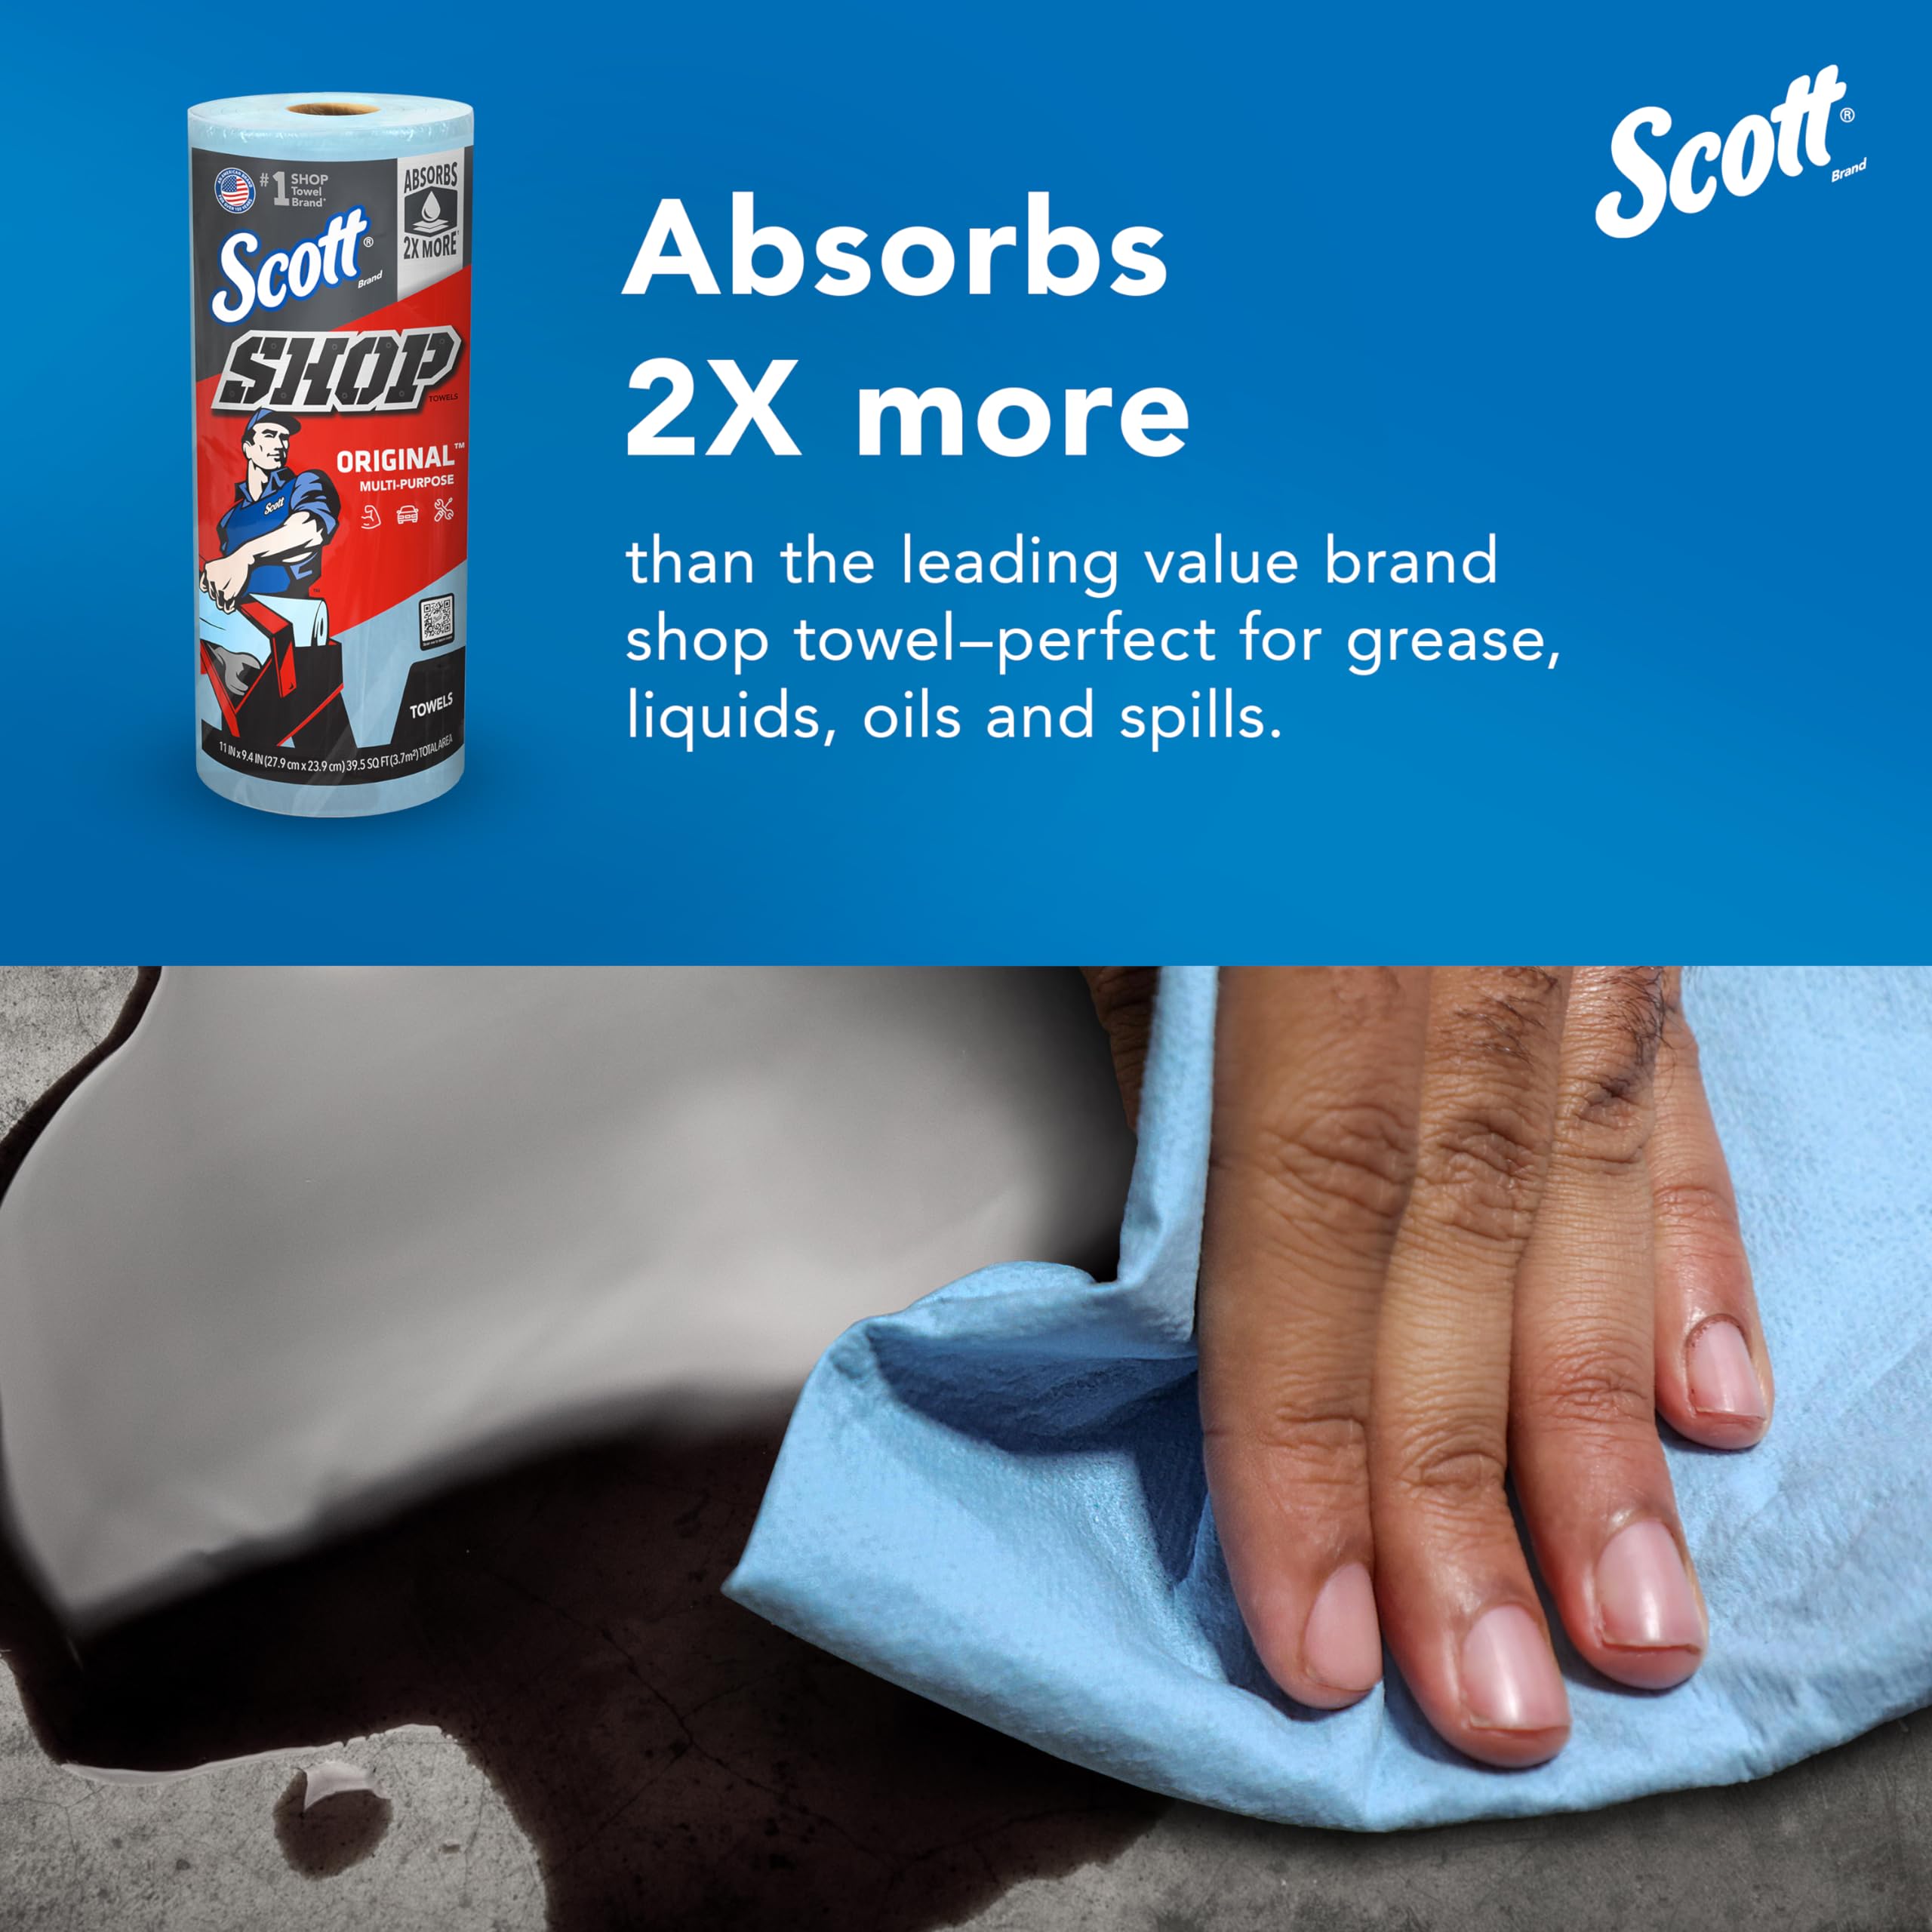 Scott® Shop Towels Original™ (55990), Blue Shop Towels, Big Rolls, 4 Packs of 6 Rolls, 11